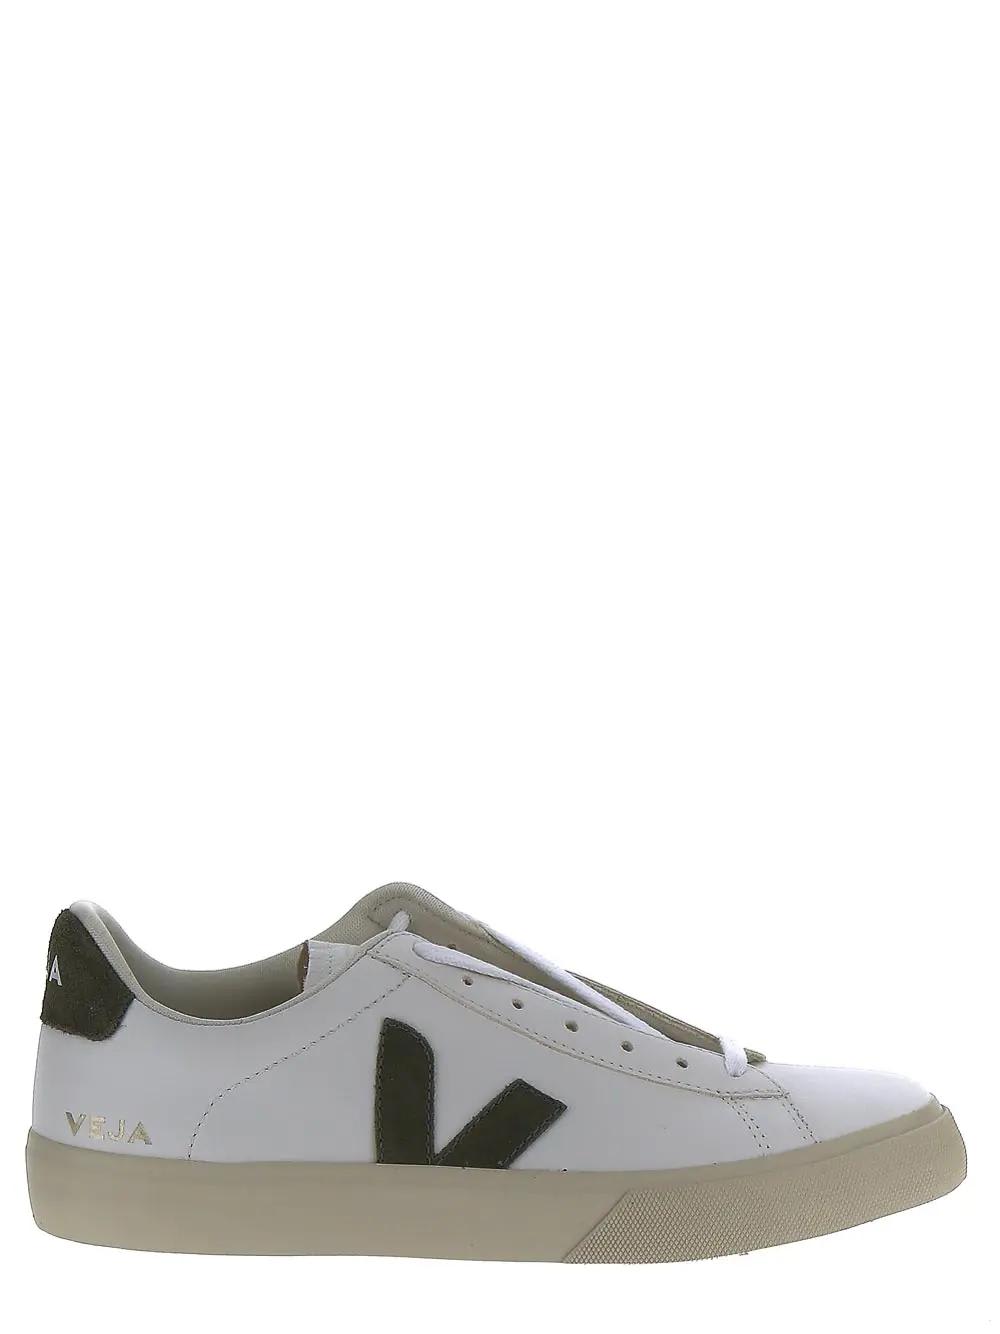 Veja Leather Sneakers In White Kaki